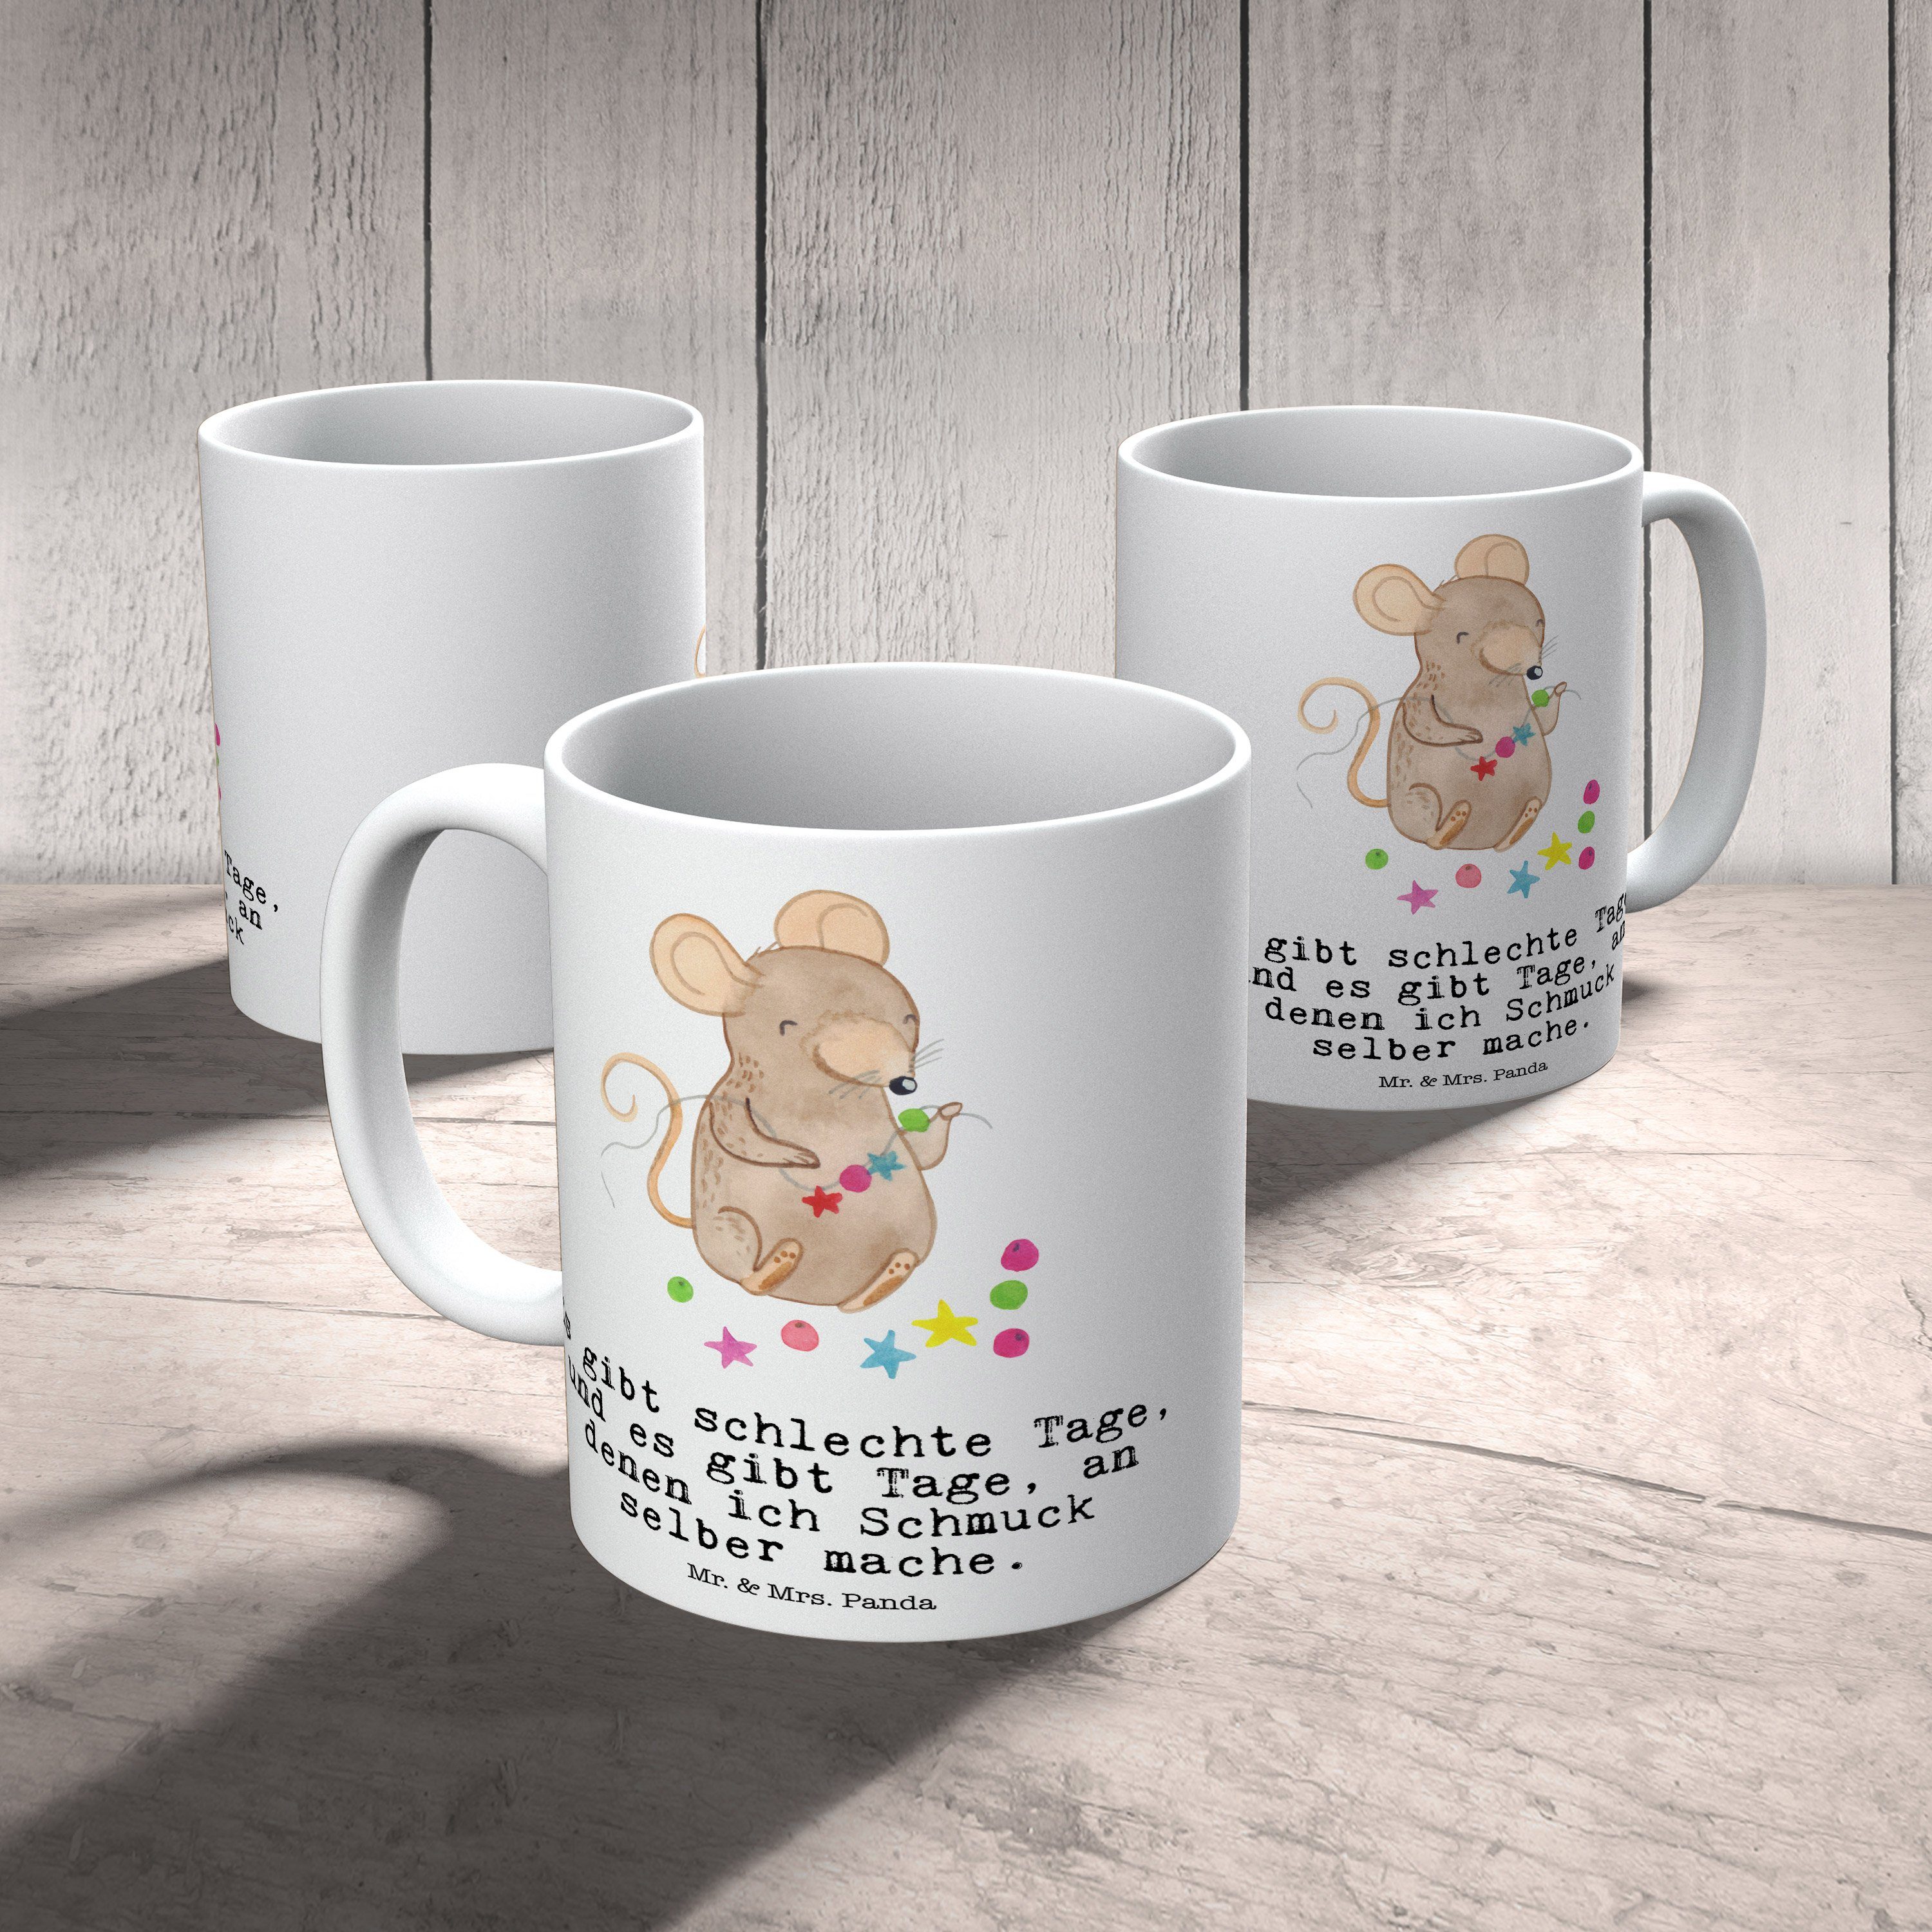 Mr. & Mrs. Panda Tasse Weiß - Geschenk, machen Keramik Maus Tasse, Geschenk Schmuck Tage Sp, selber 